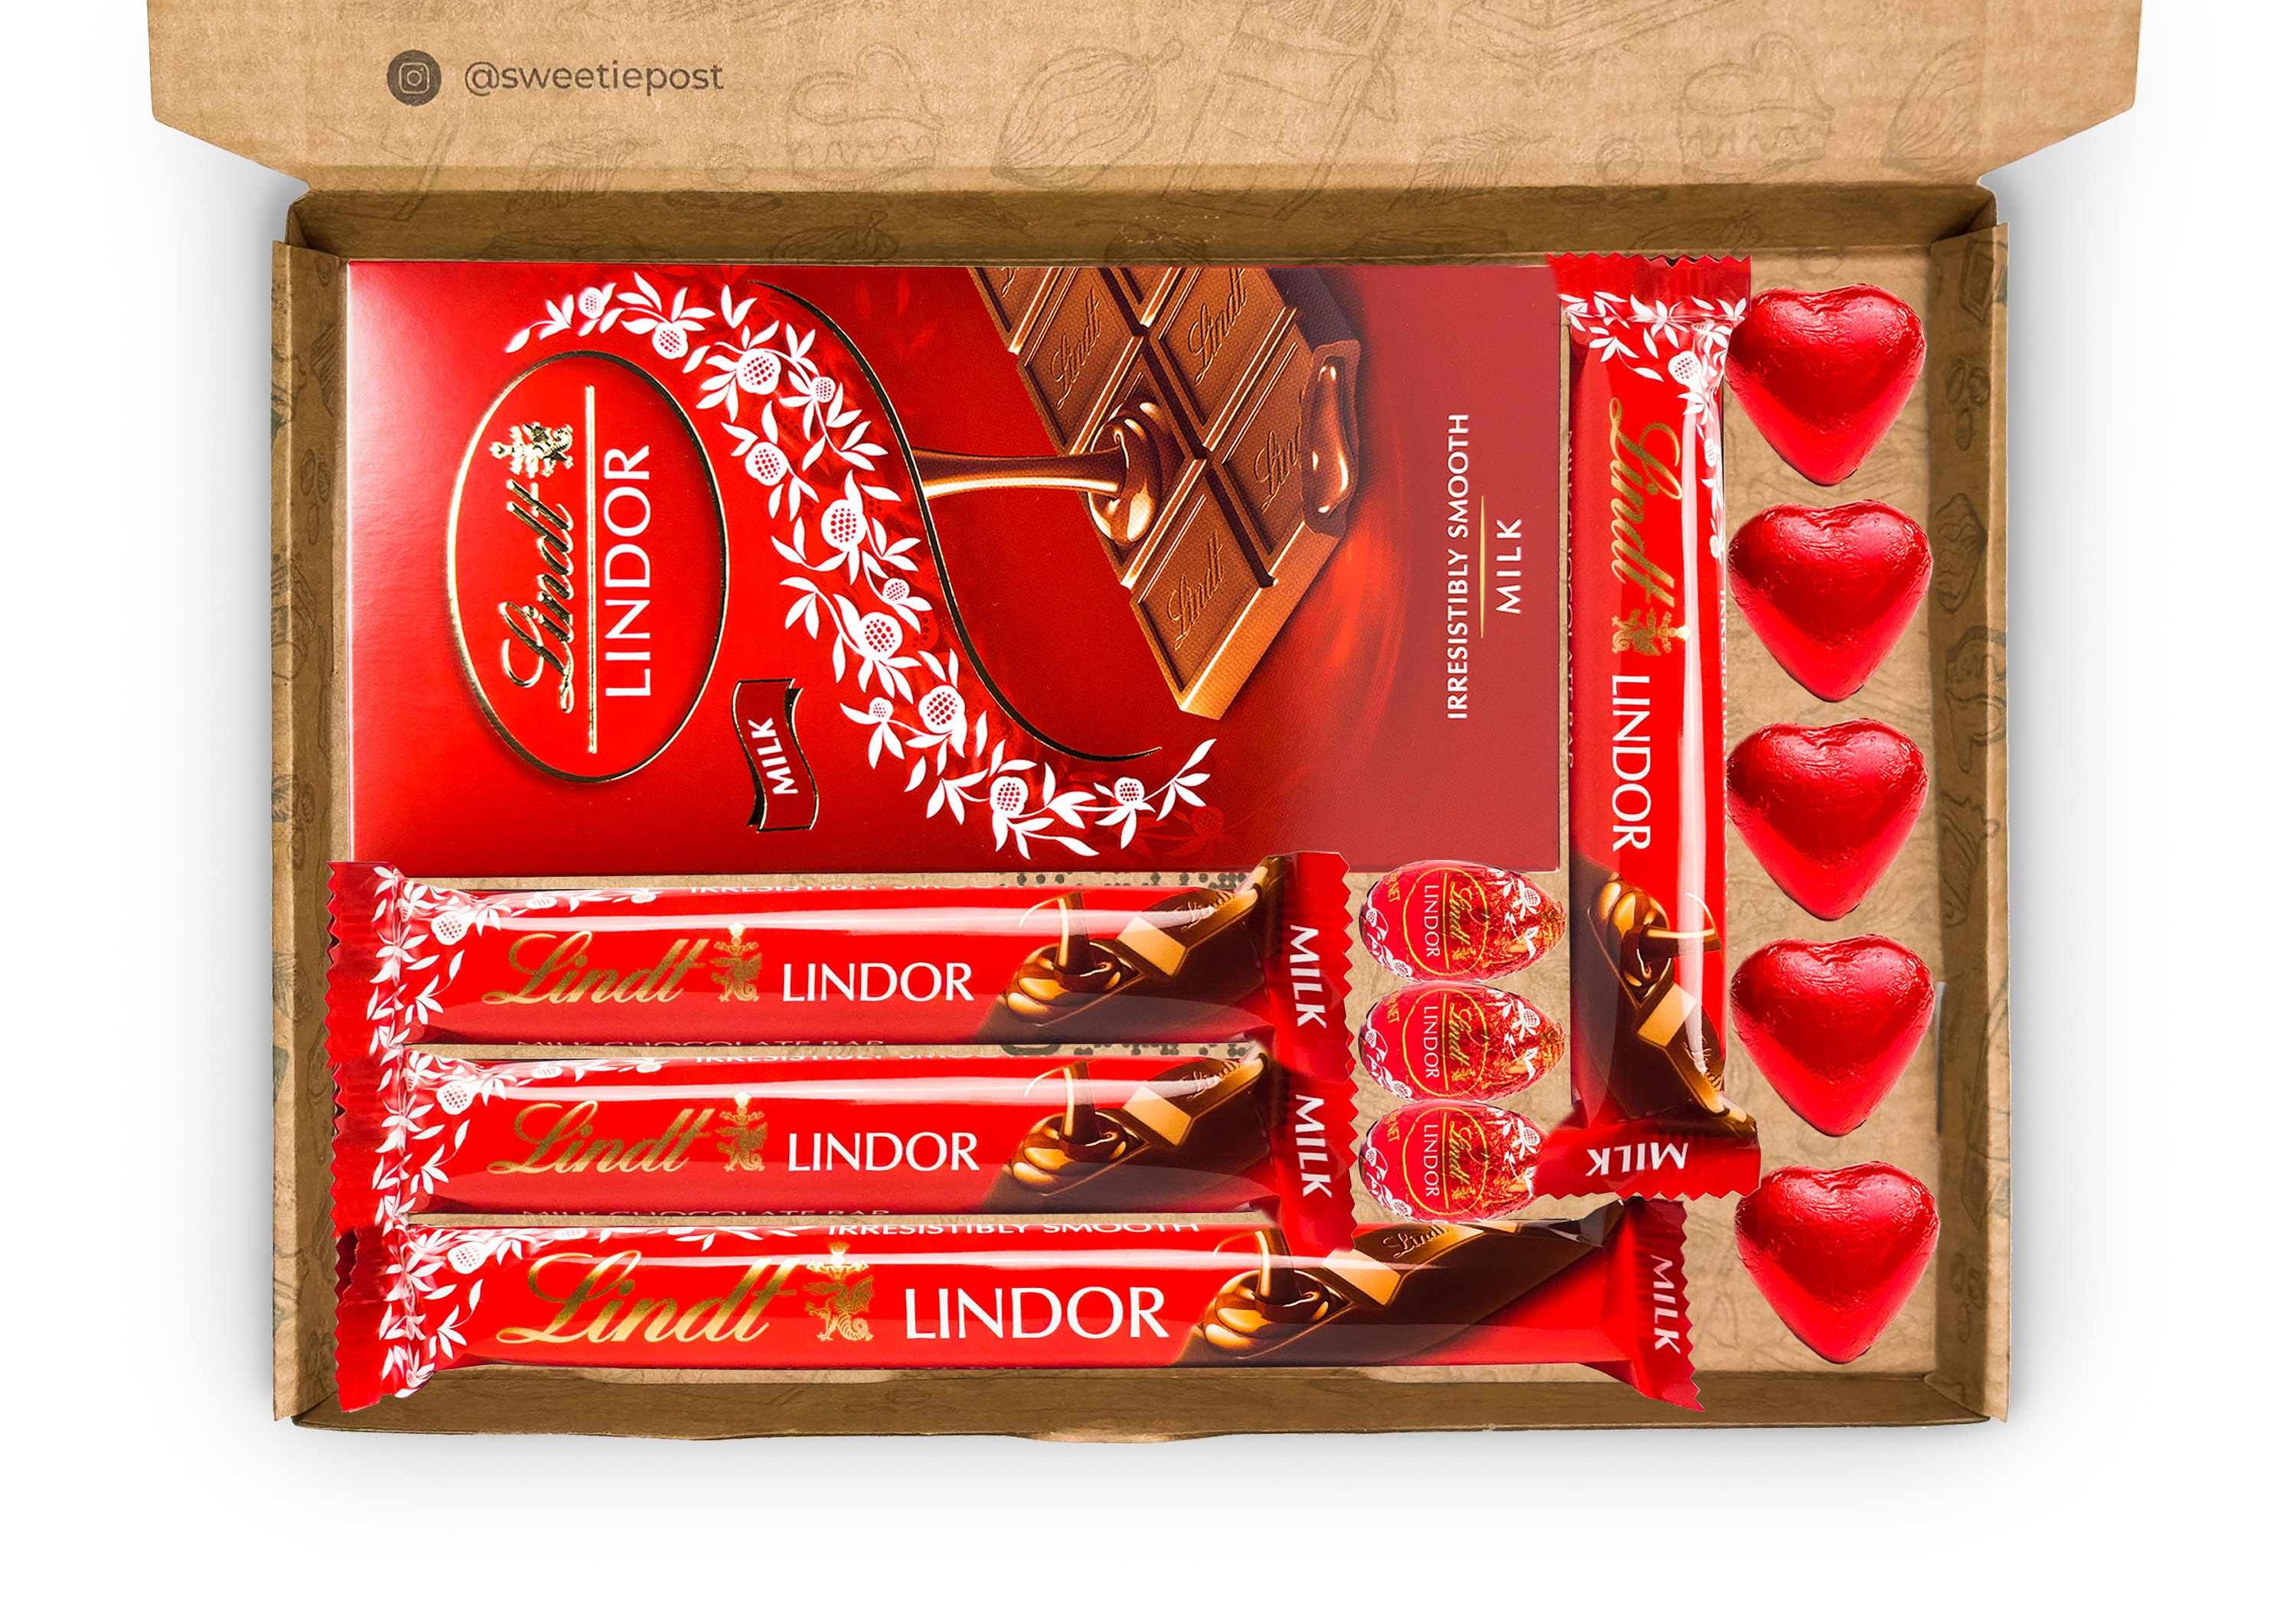 Moins de chocolats dans la boîte : Lindt épinglé - La République